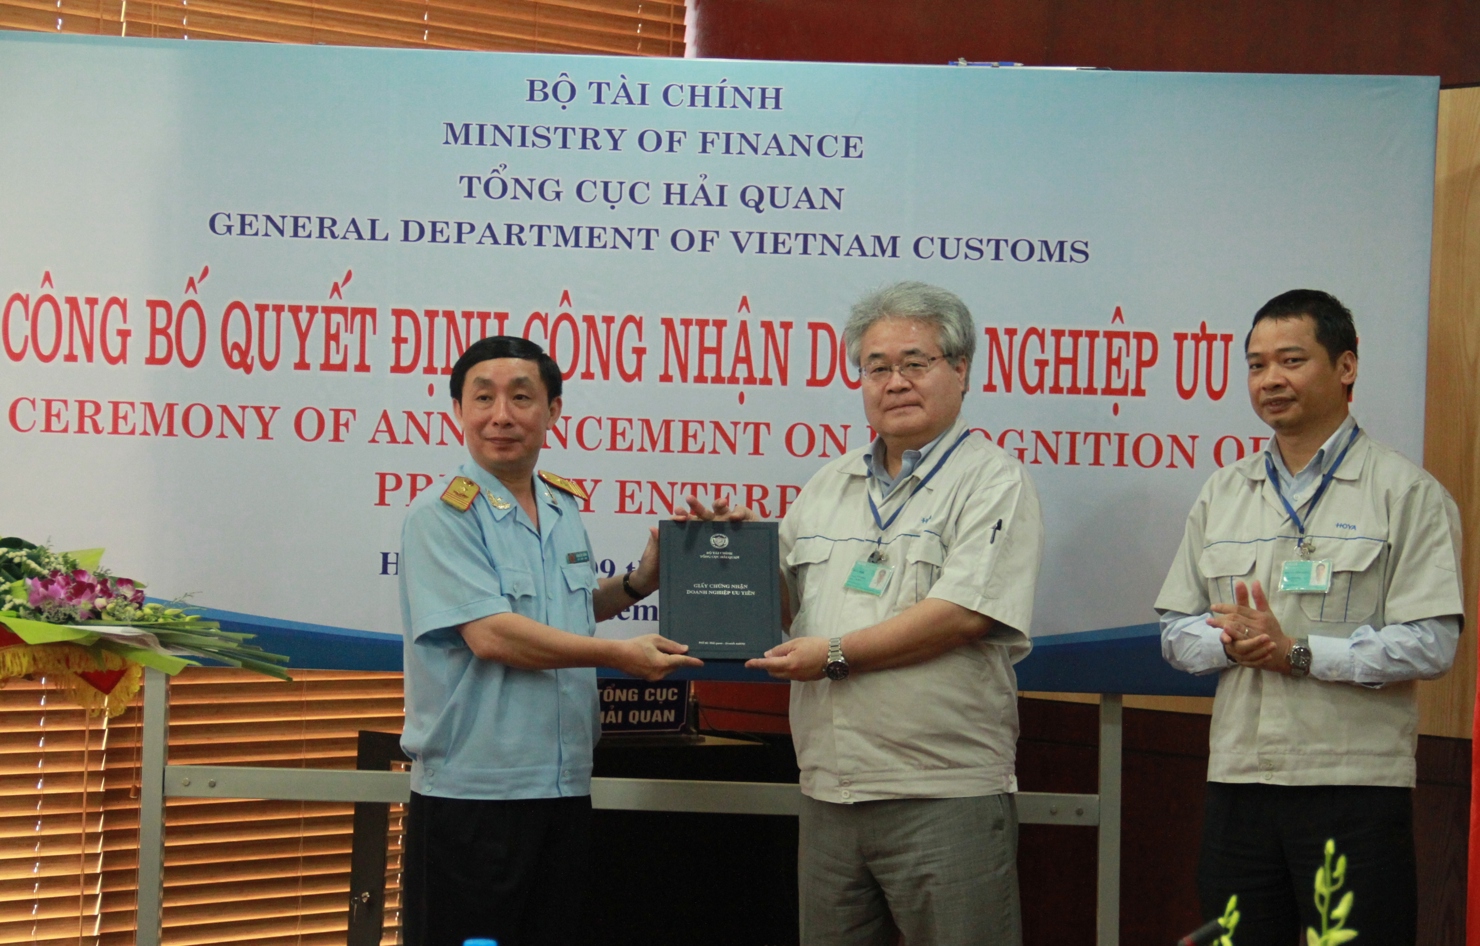 Đại diện trao quyết định công nhận doanh nghiệp ưu tiên cho đại diện Công ty Hoya Glass Disk Việt Nam. Nguồn: internet